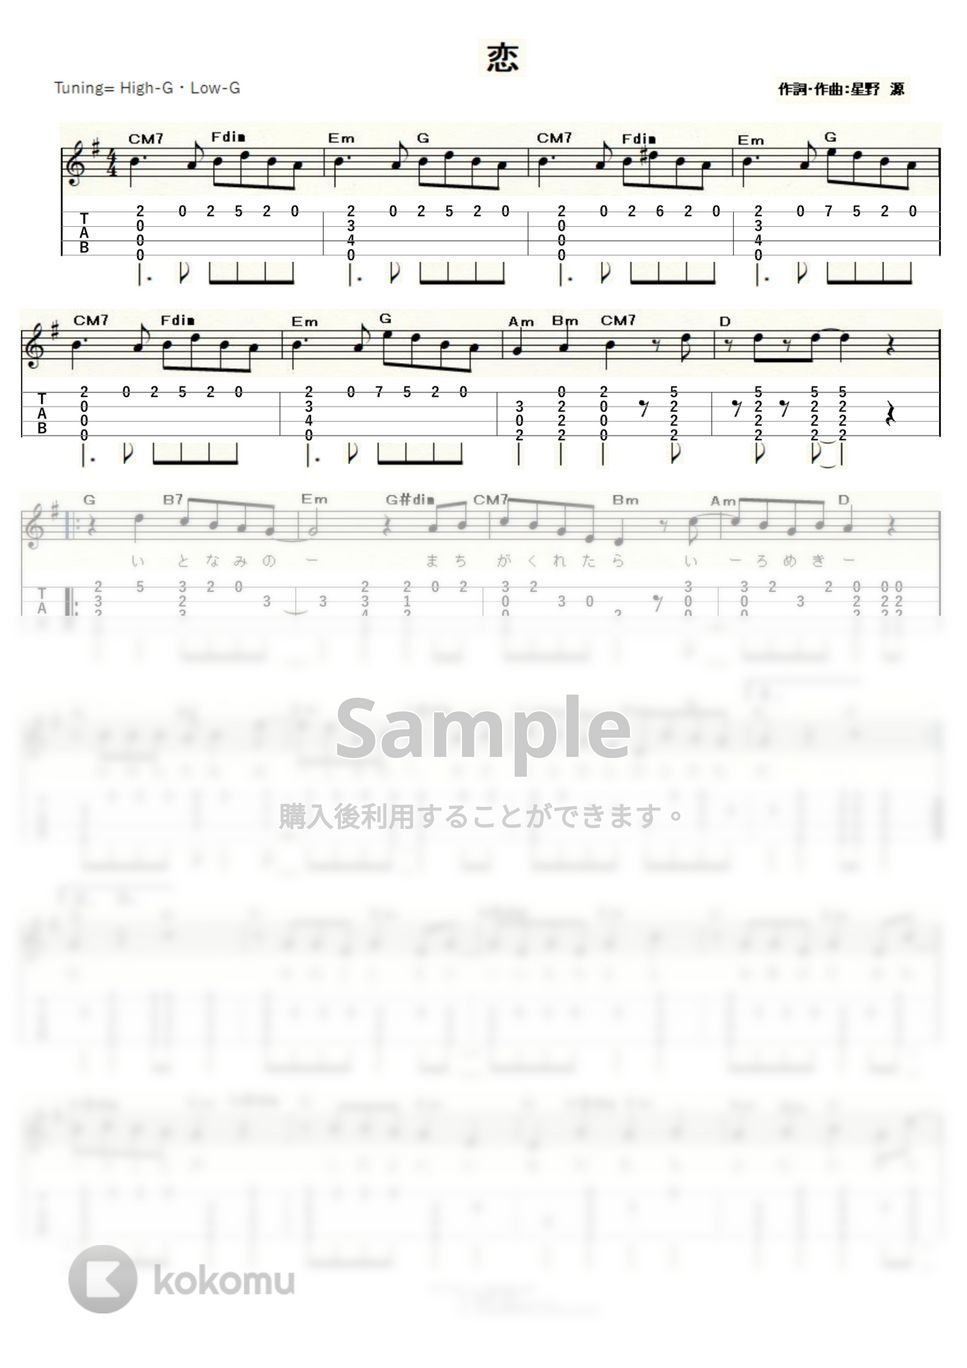 星野 源 - 恋 (ｳｸﾚﾚｿﾛ / High-G,Low-G / 中級) by ukulelepapa